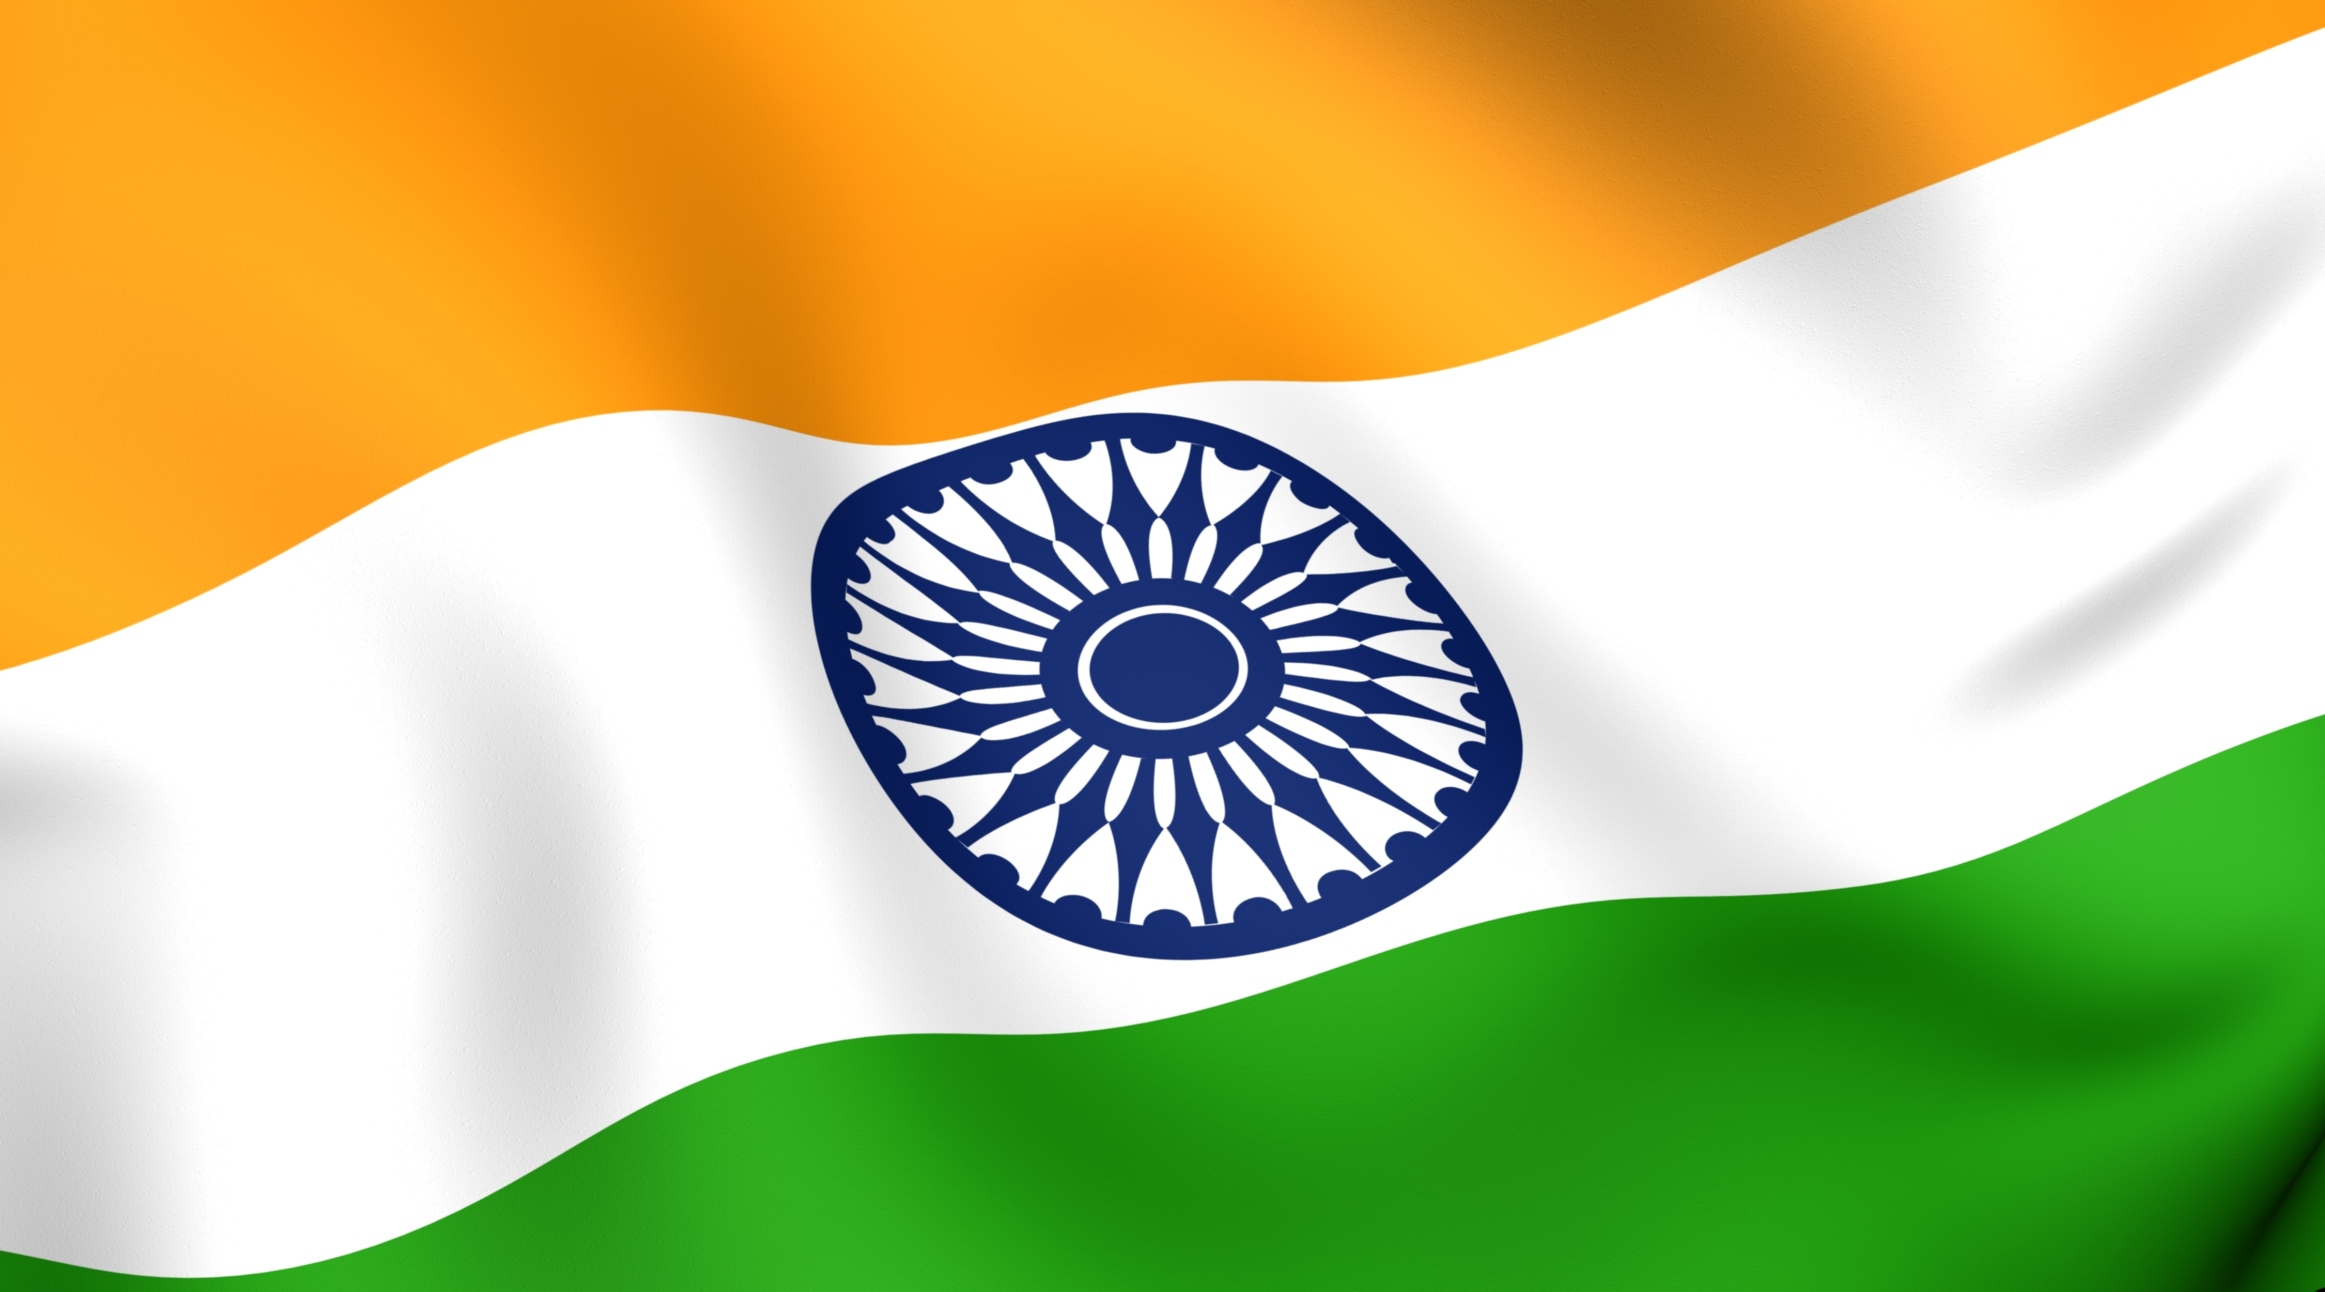 인도 벽지,깃발